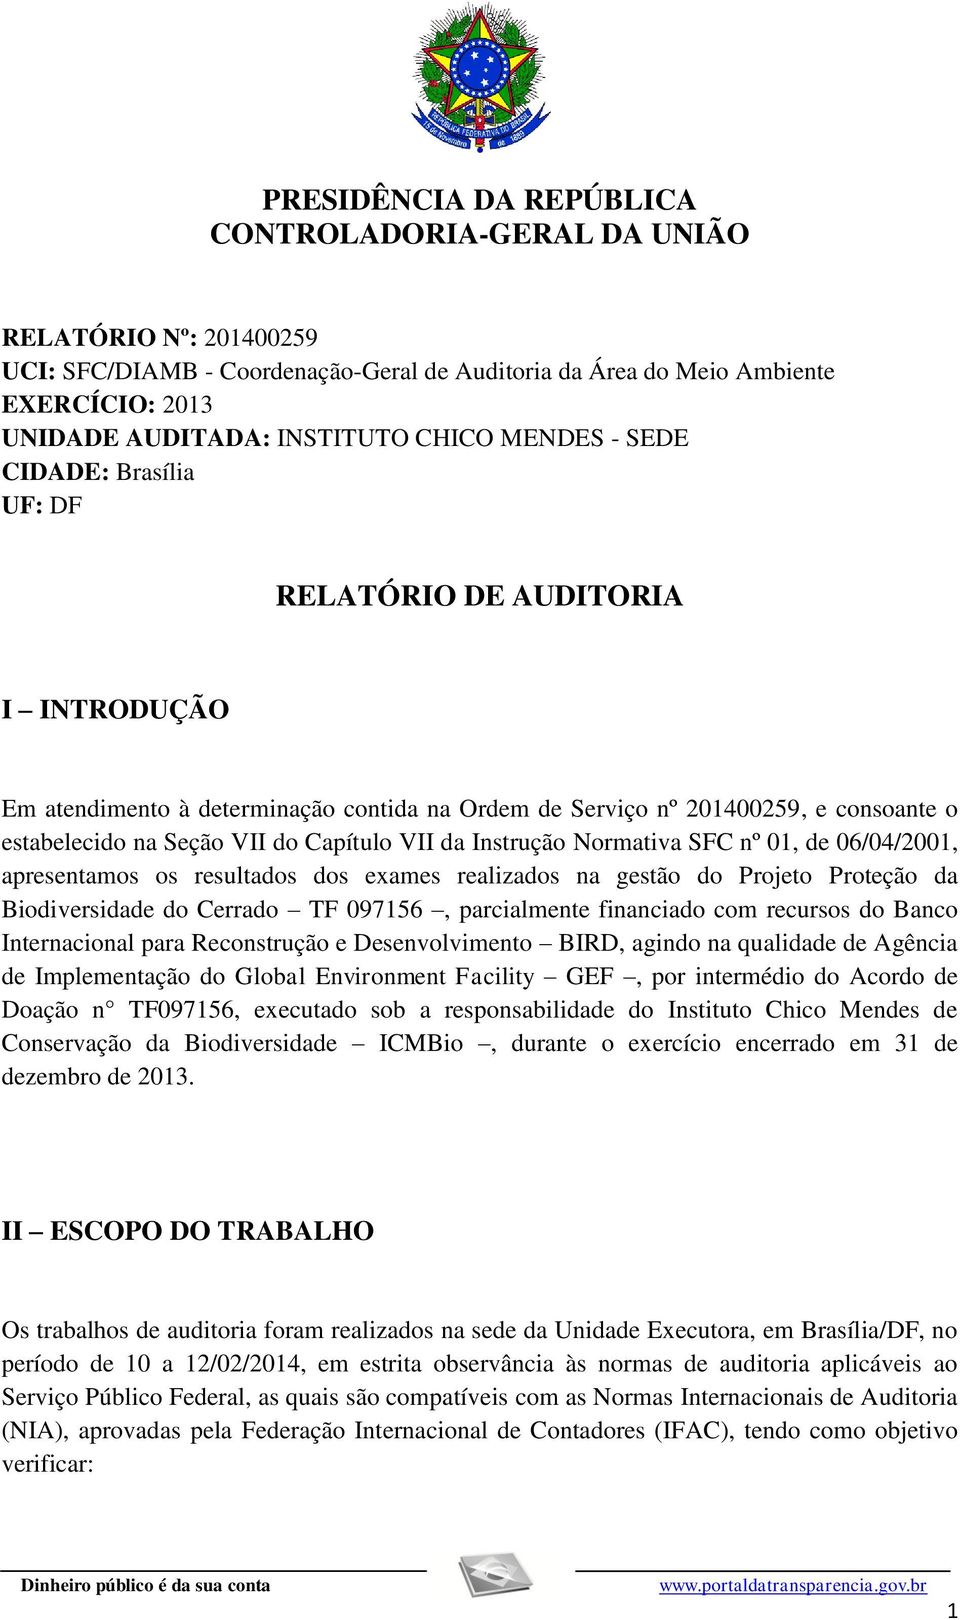 Capítulo VII da Instrução Normativa SFC nº 01, de 06/04/2001, apresentamos os resultados dos exames realizados na gestão do Projeto Proteção da Biodiversidade do Cerrado TF 097156, parcialmente